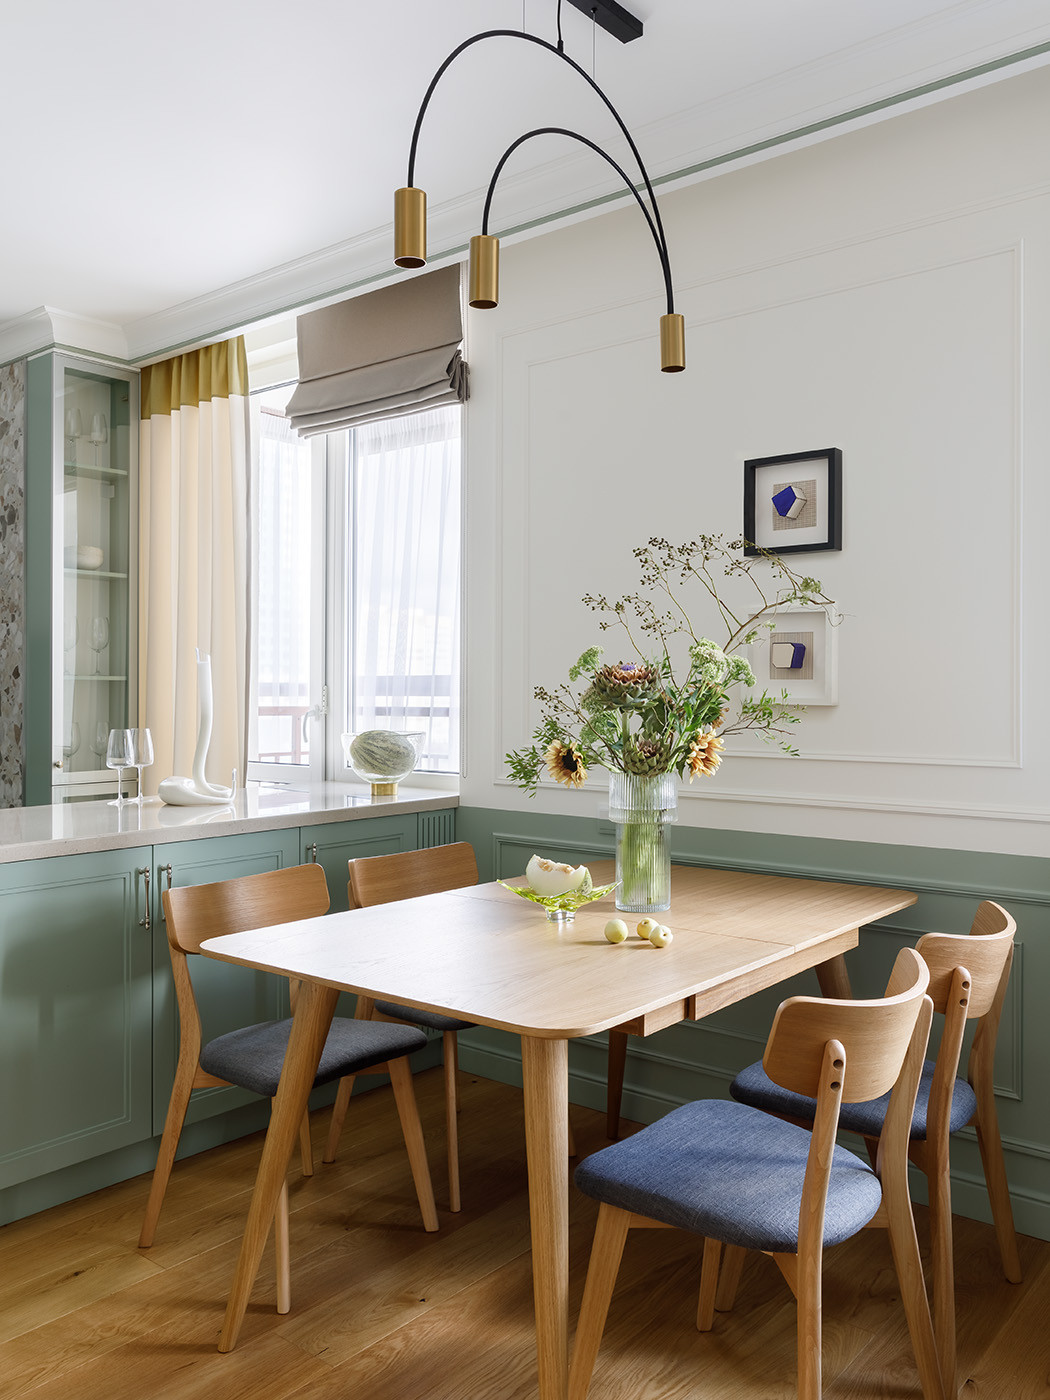 Дизайн кухонь в квартире , фото готовых интерьеров кухонь в квартире и идей дизайна